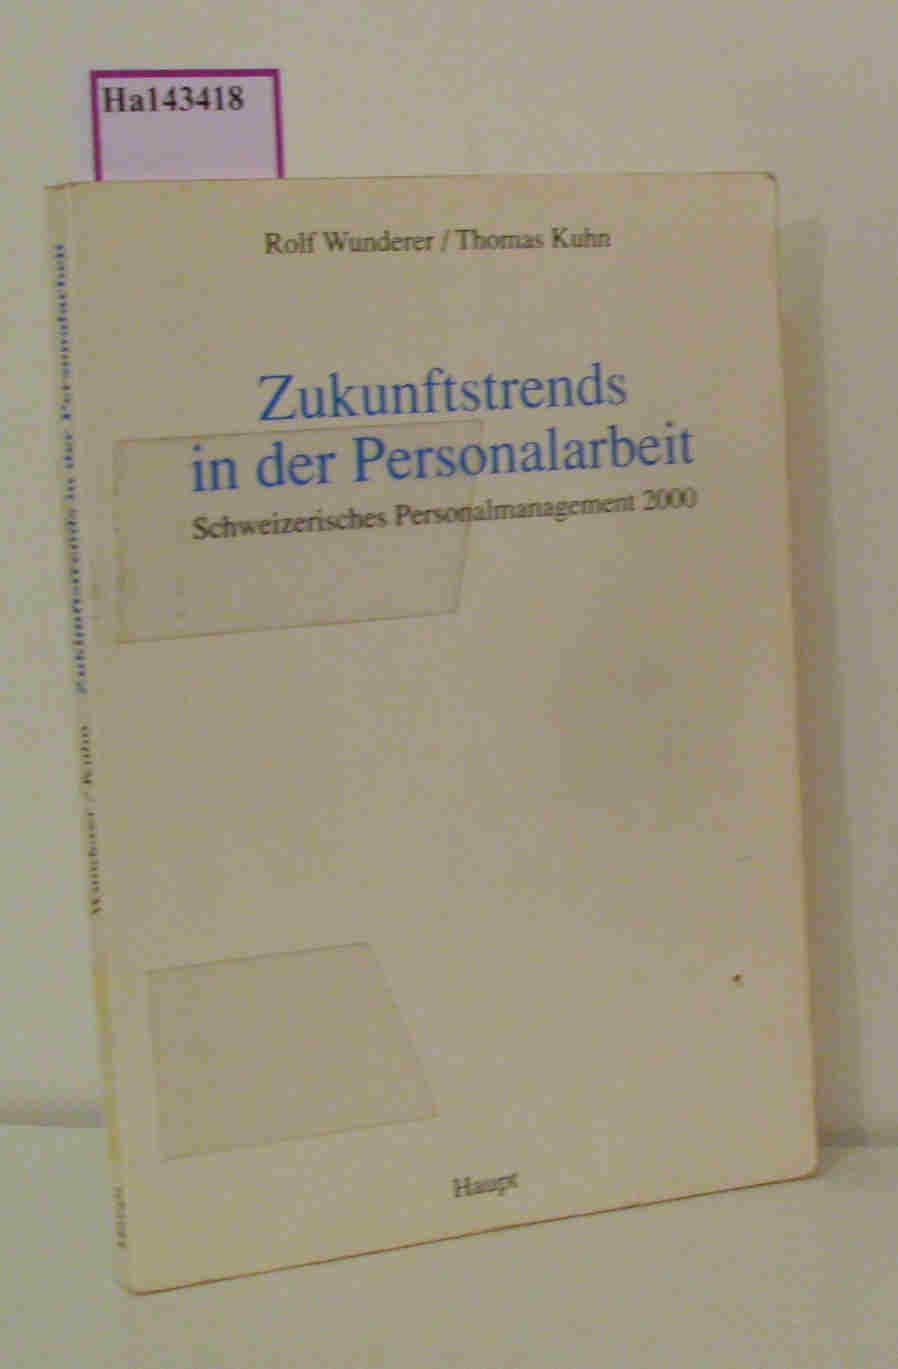 Zukunftstrends in der Personalarbeit. Schweizerisches Personalmanagement 2000. - Wunderer,  R. / Kuhn, T.